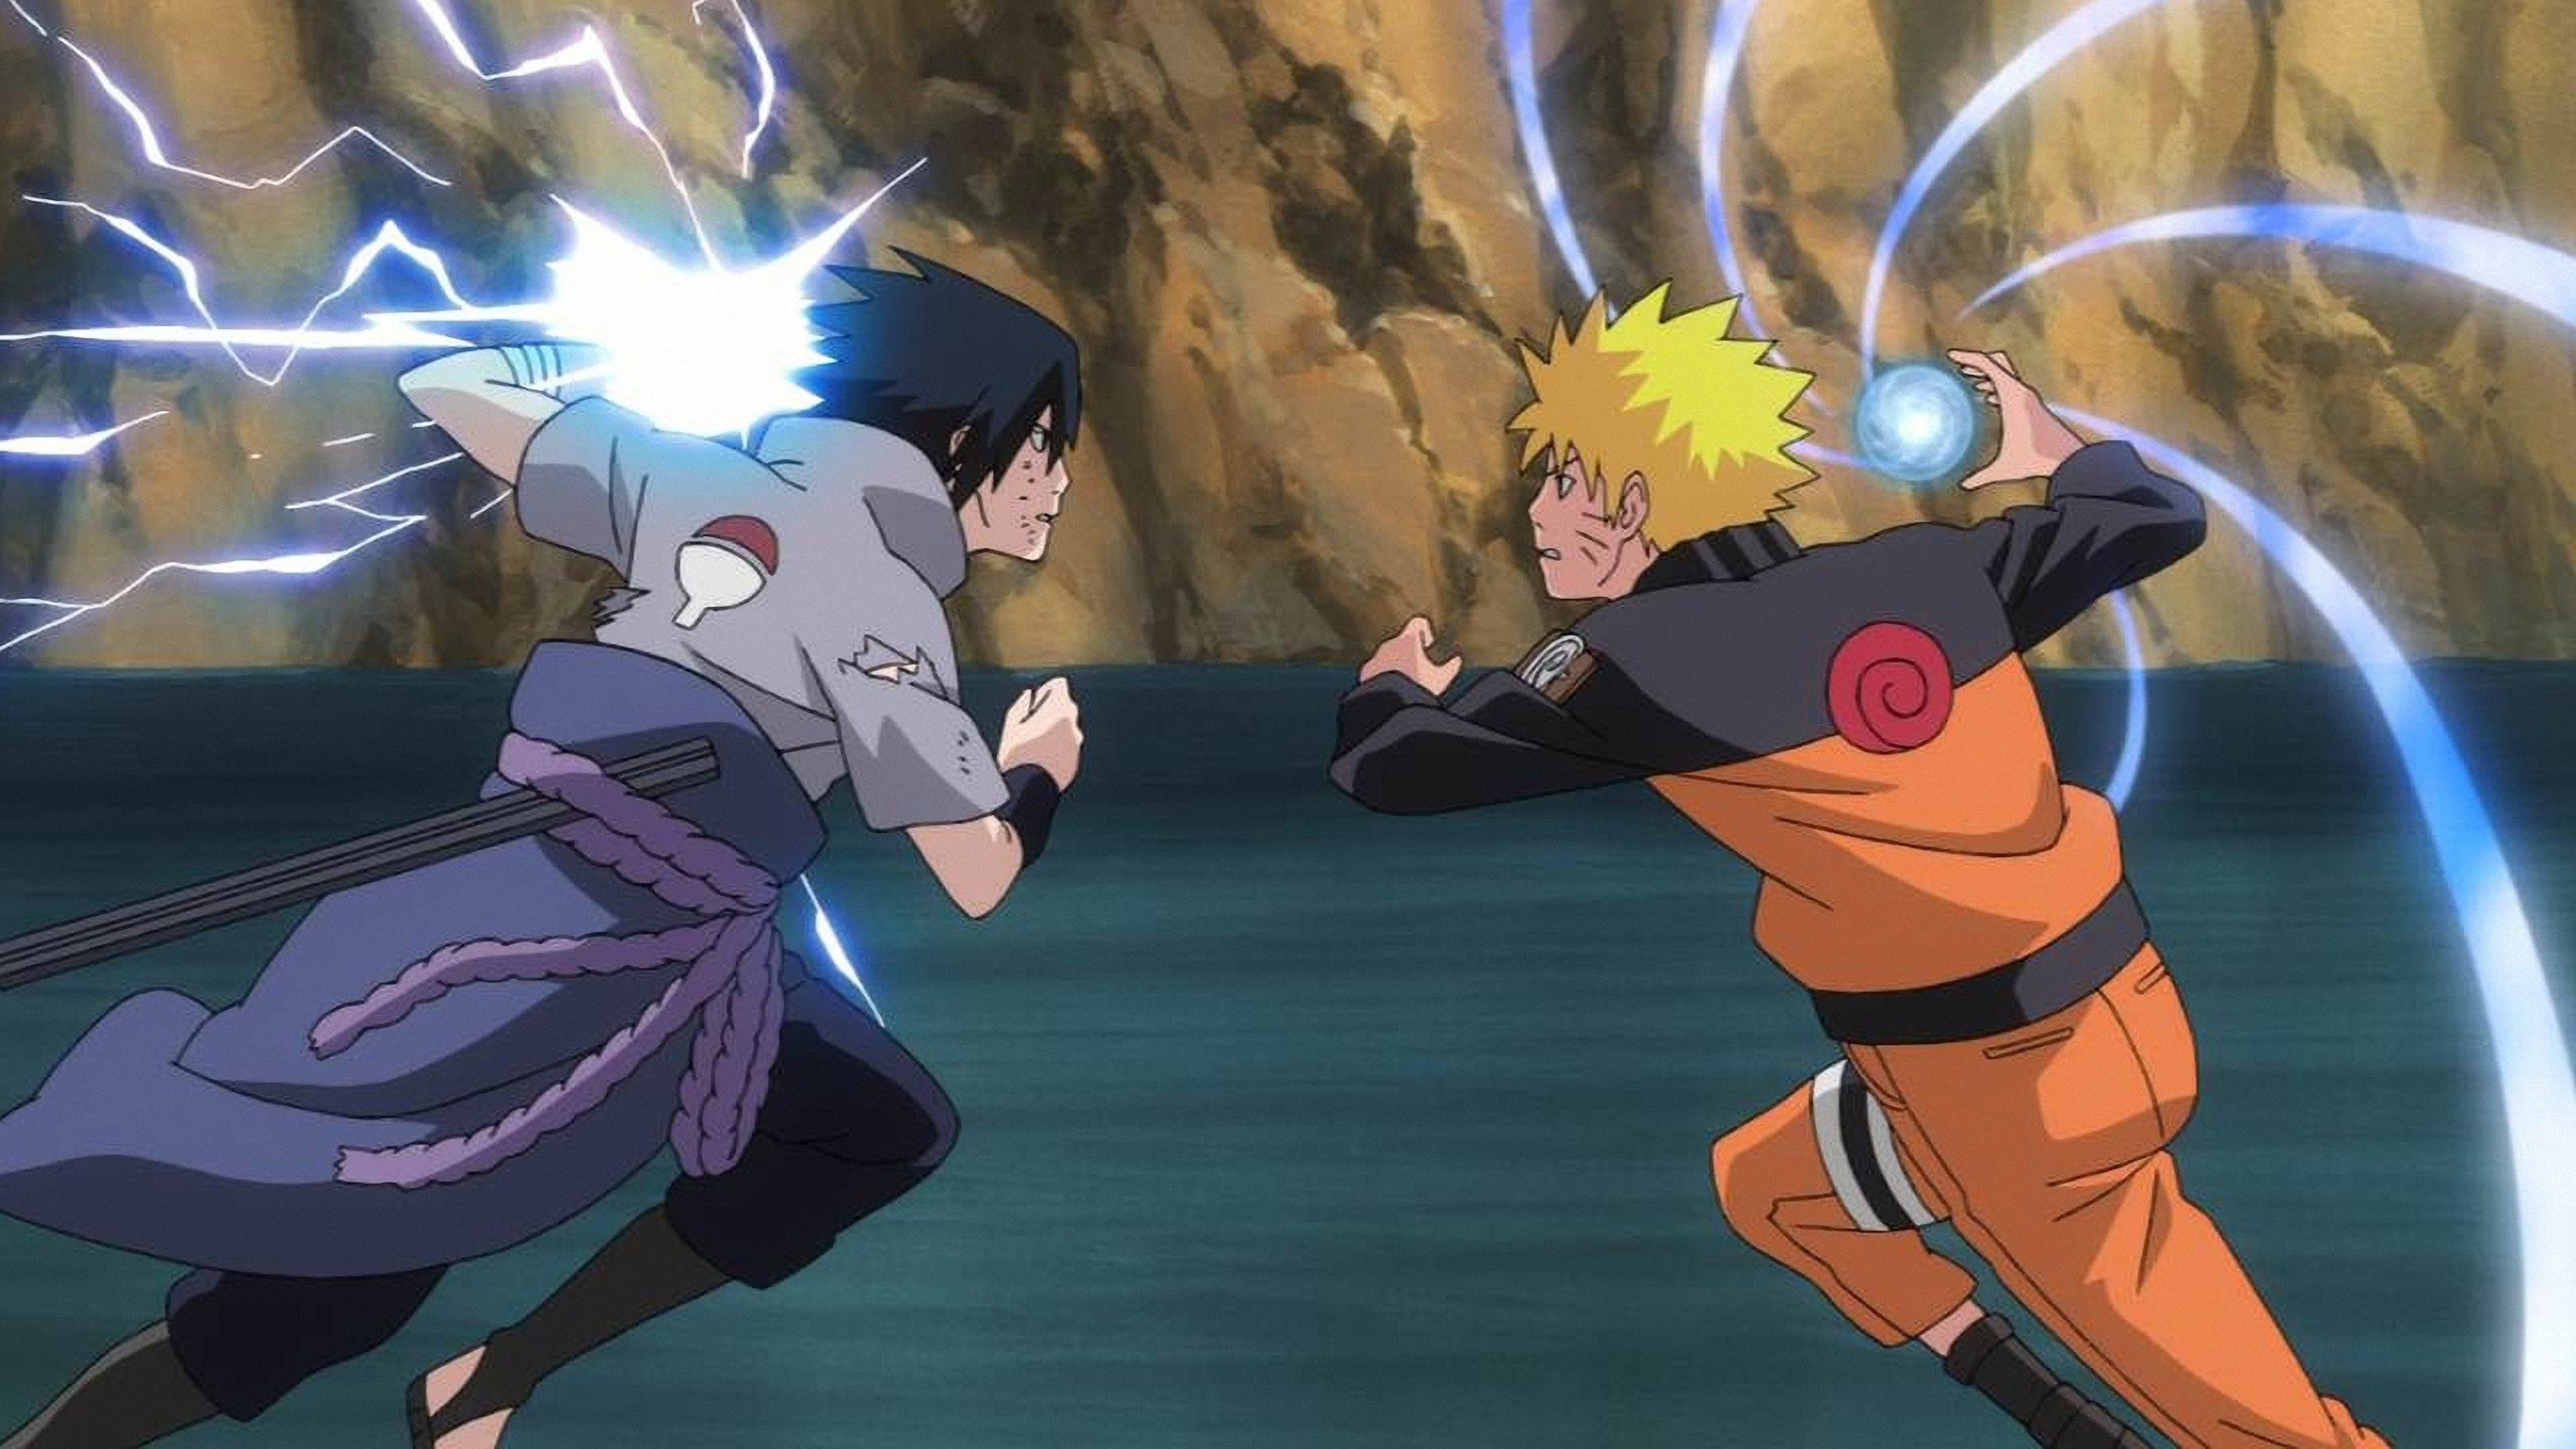 Naruto Shippuden revela Trailer para Naruto vs Sasuke